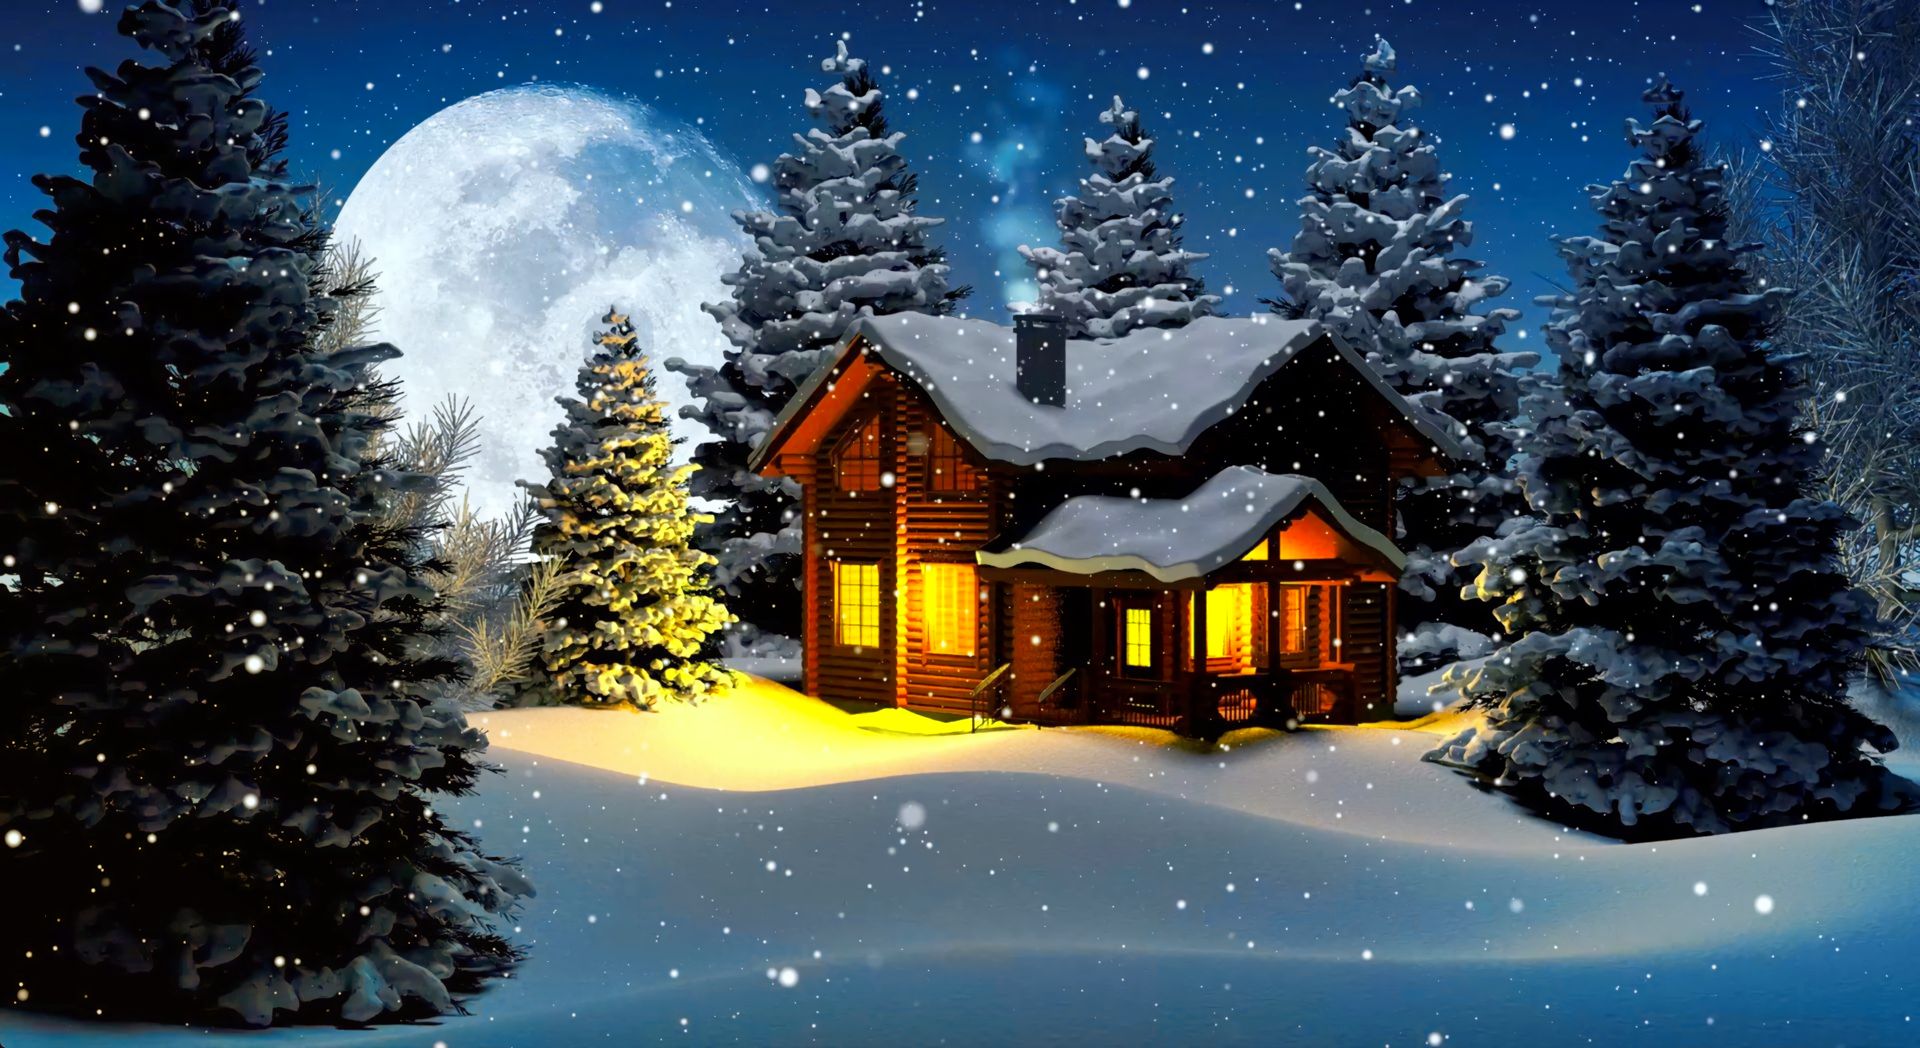 Скачать обои бесплатно Зима, Ночь, Луна, Снег, Дерево, Дом, Снегопад, Коттедж, Художественные картинка на рабочий стол ПК